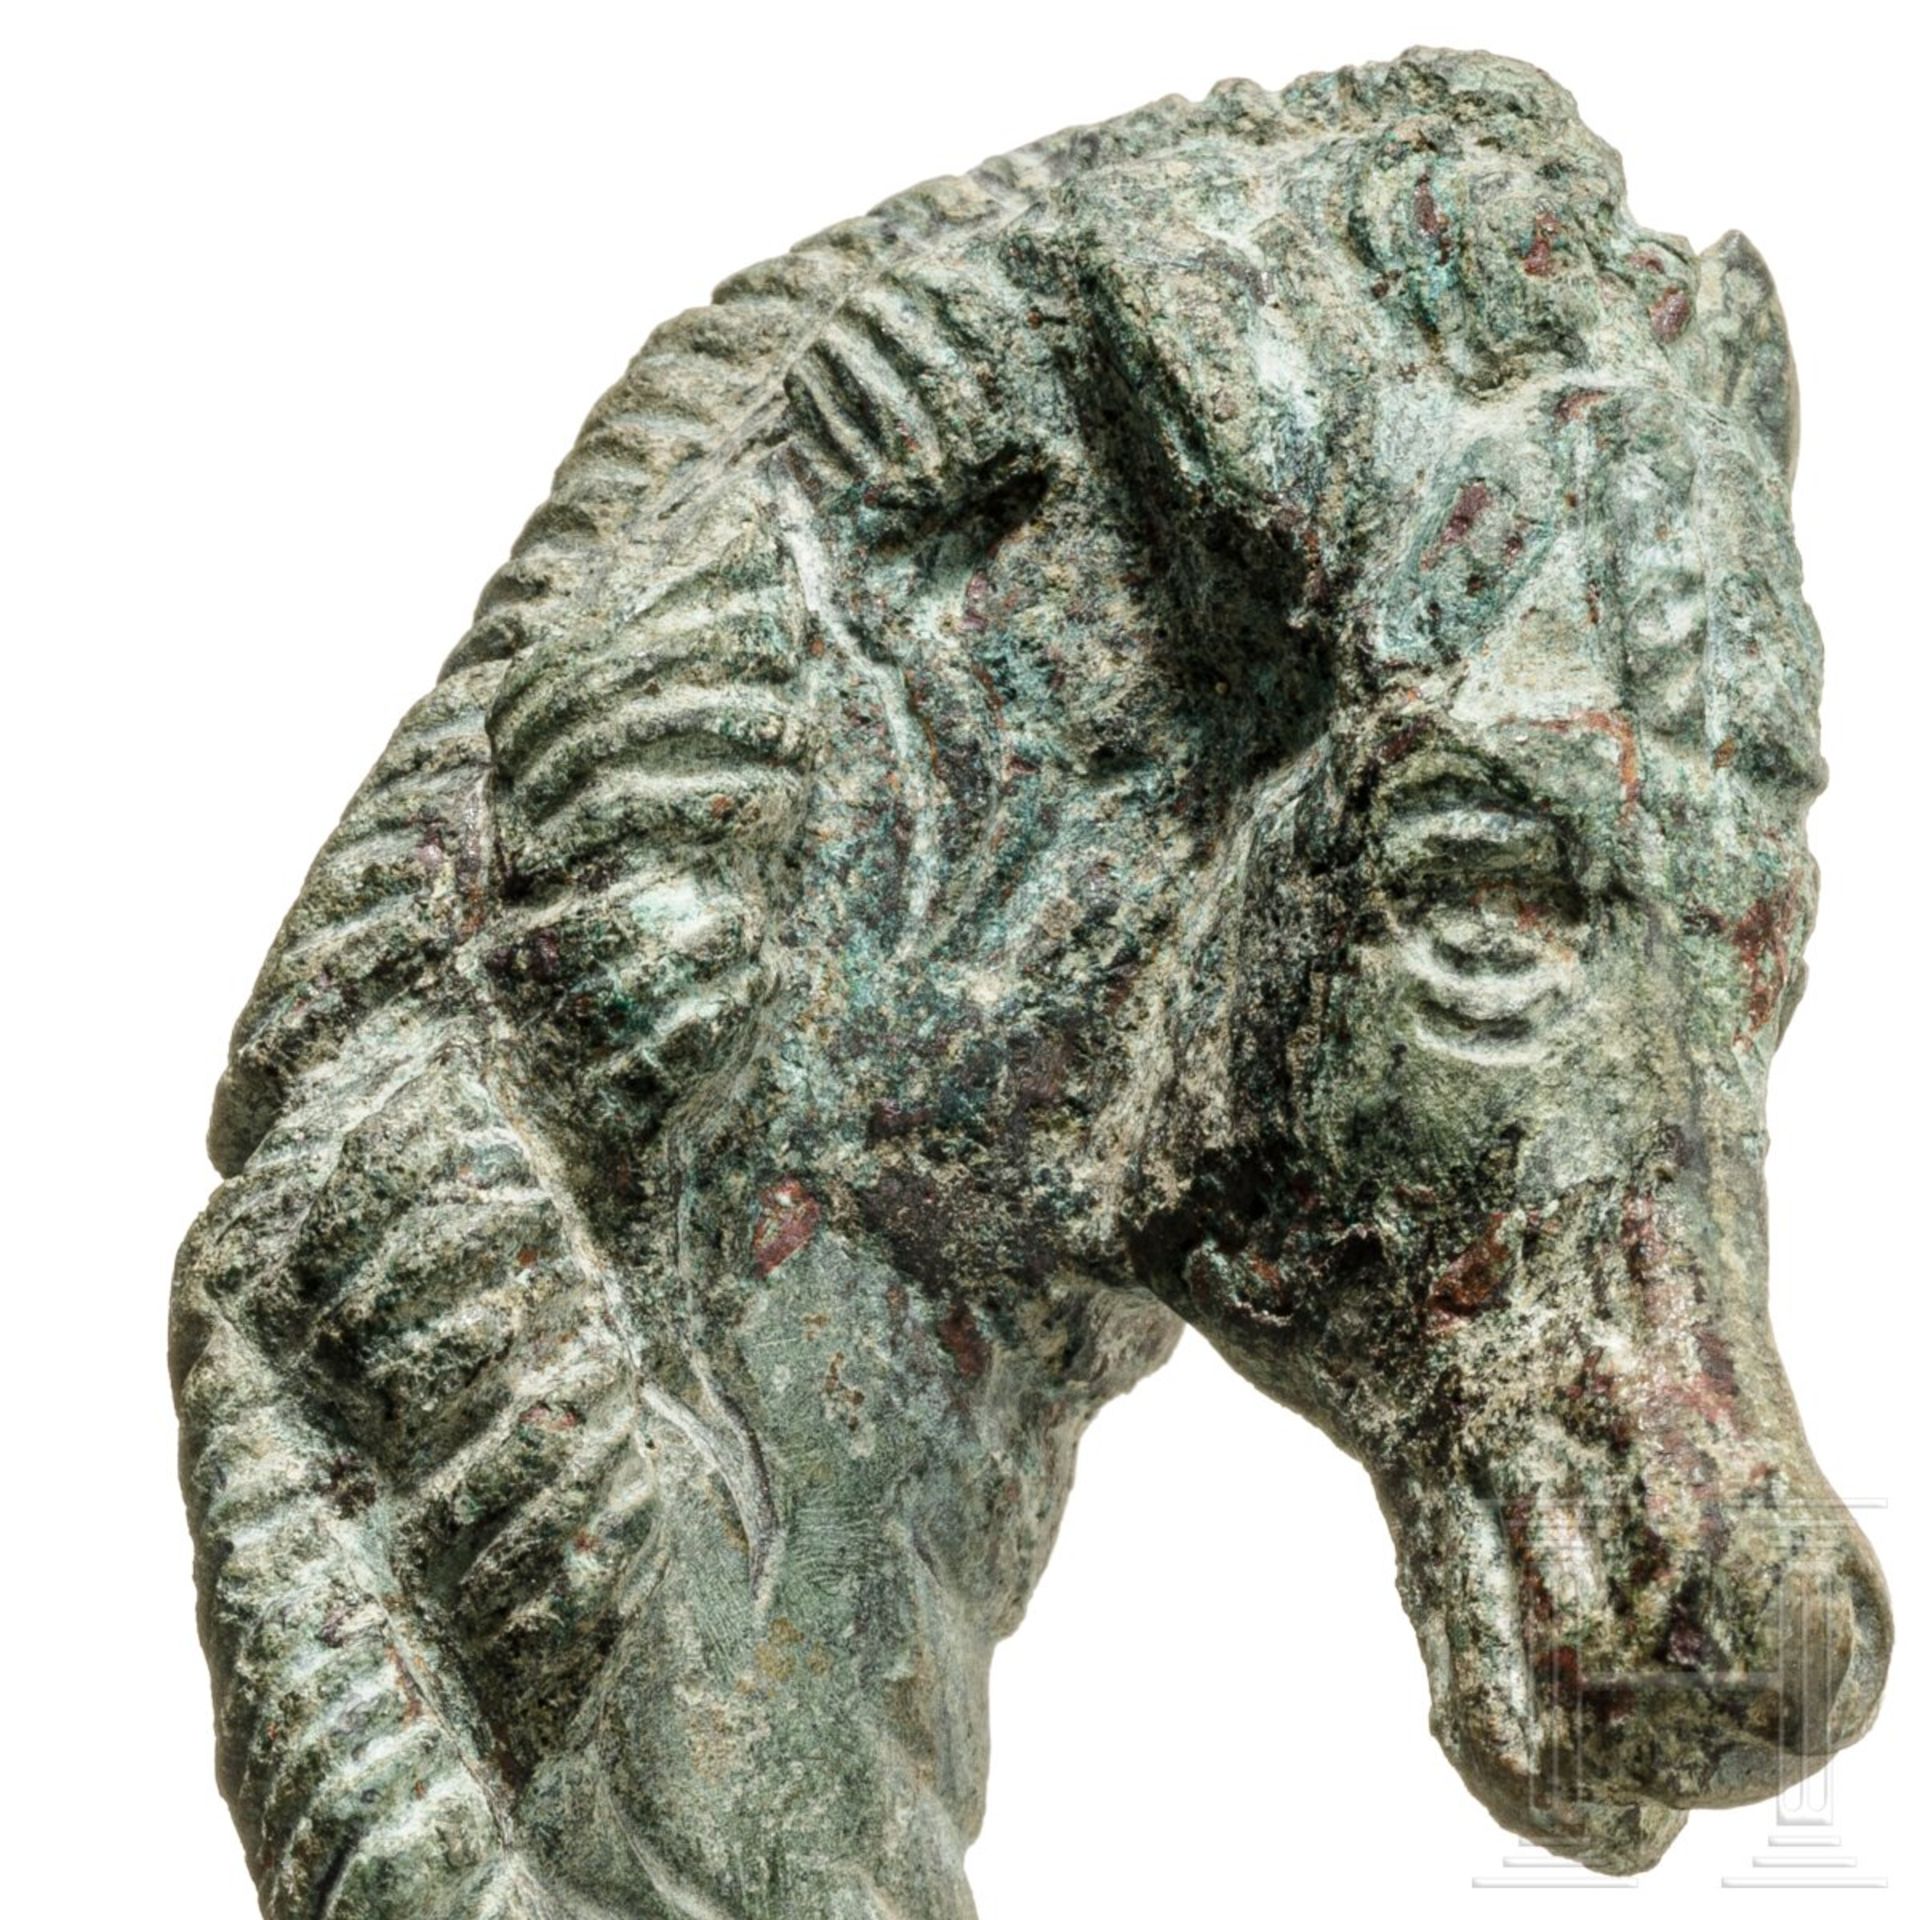 Pferdekopf-Endstück eines Gerätegriffs, Bronze, römisch, 2. - 3. Jhdt.  - Bild 3 aus 3